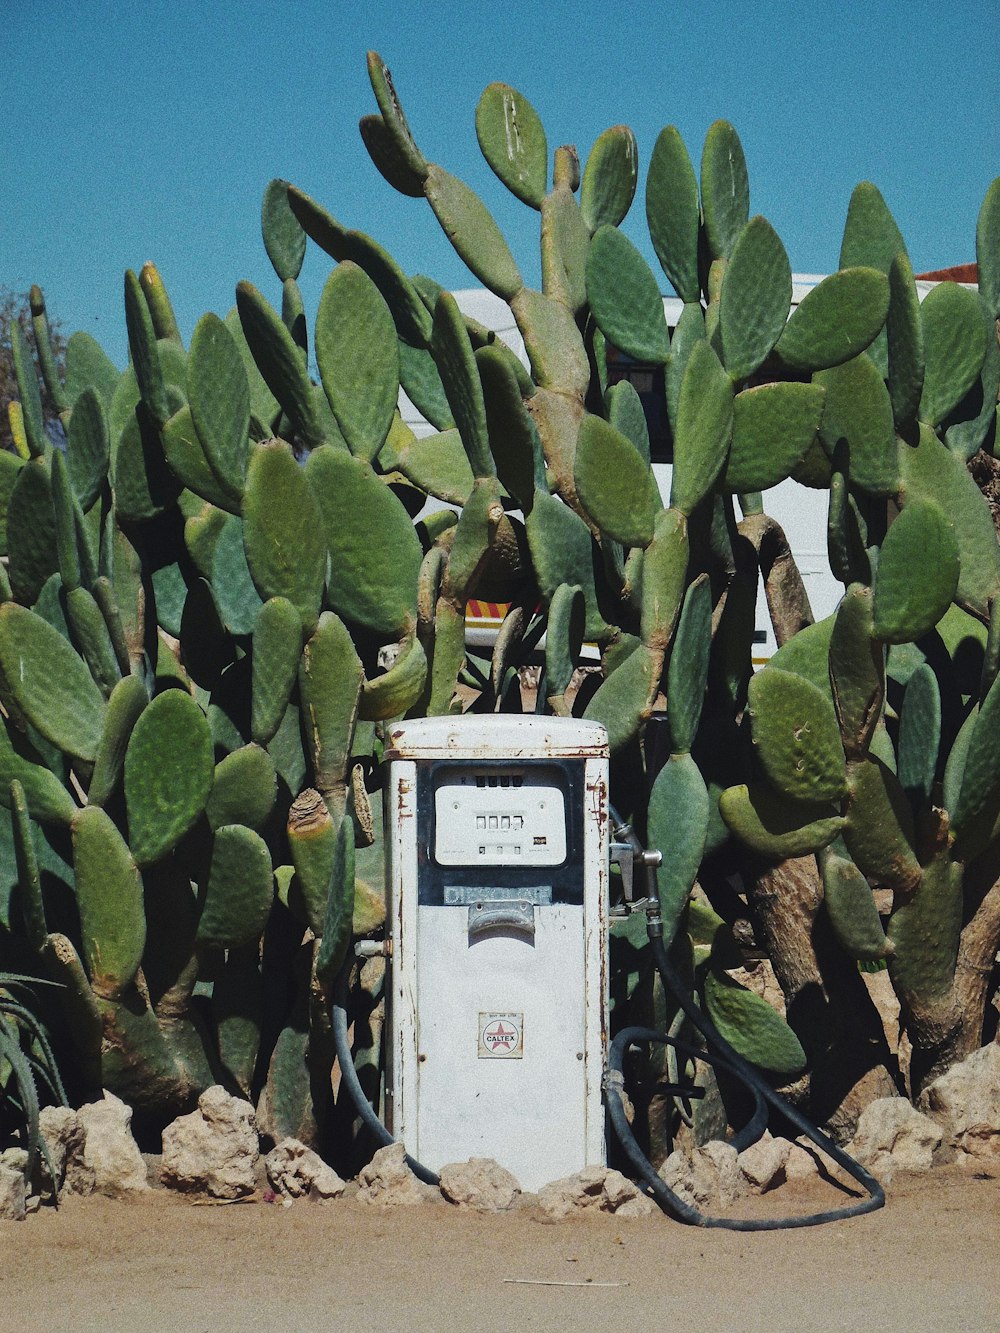 Bil taktik homoseksuel white gasoline pump machine surrounded by cactus plants photo – Free Plant  Image on Unsplash